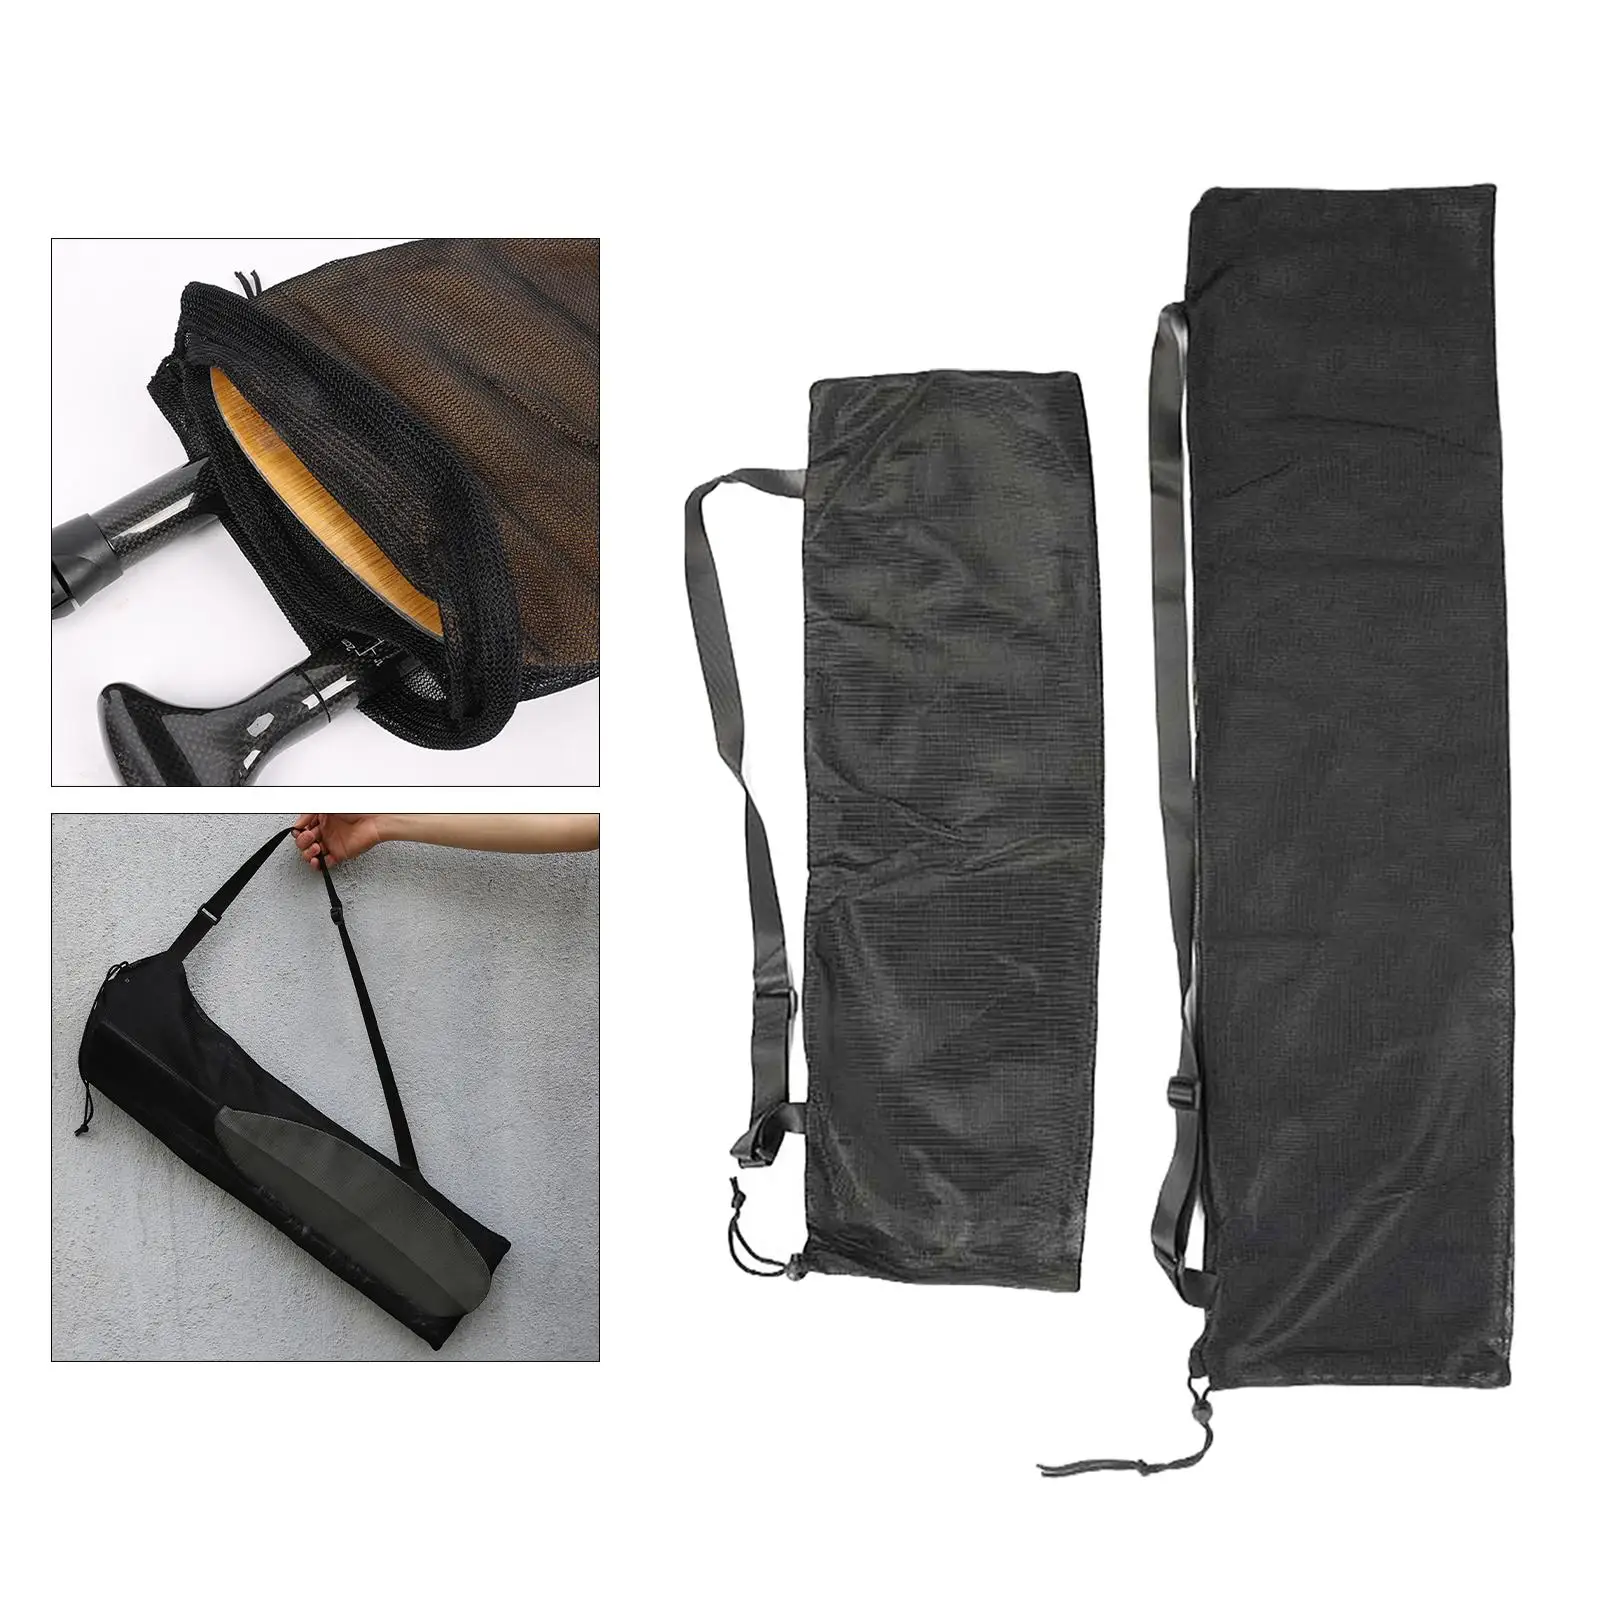 Paddle Bag for Kayak, Canoe,  Paddle, Split Paddle Storage Bag,  Mesh Bag with Shoulder Strap